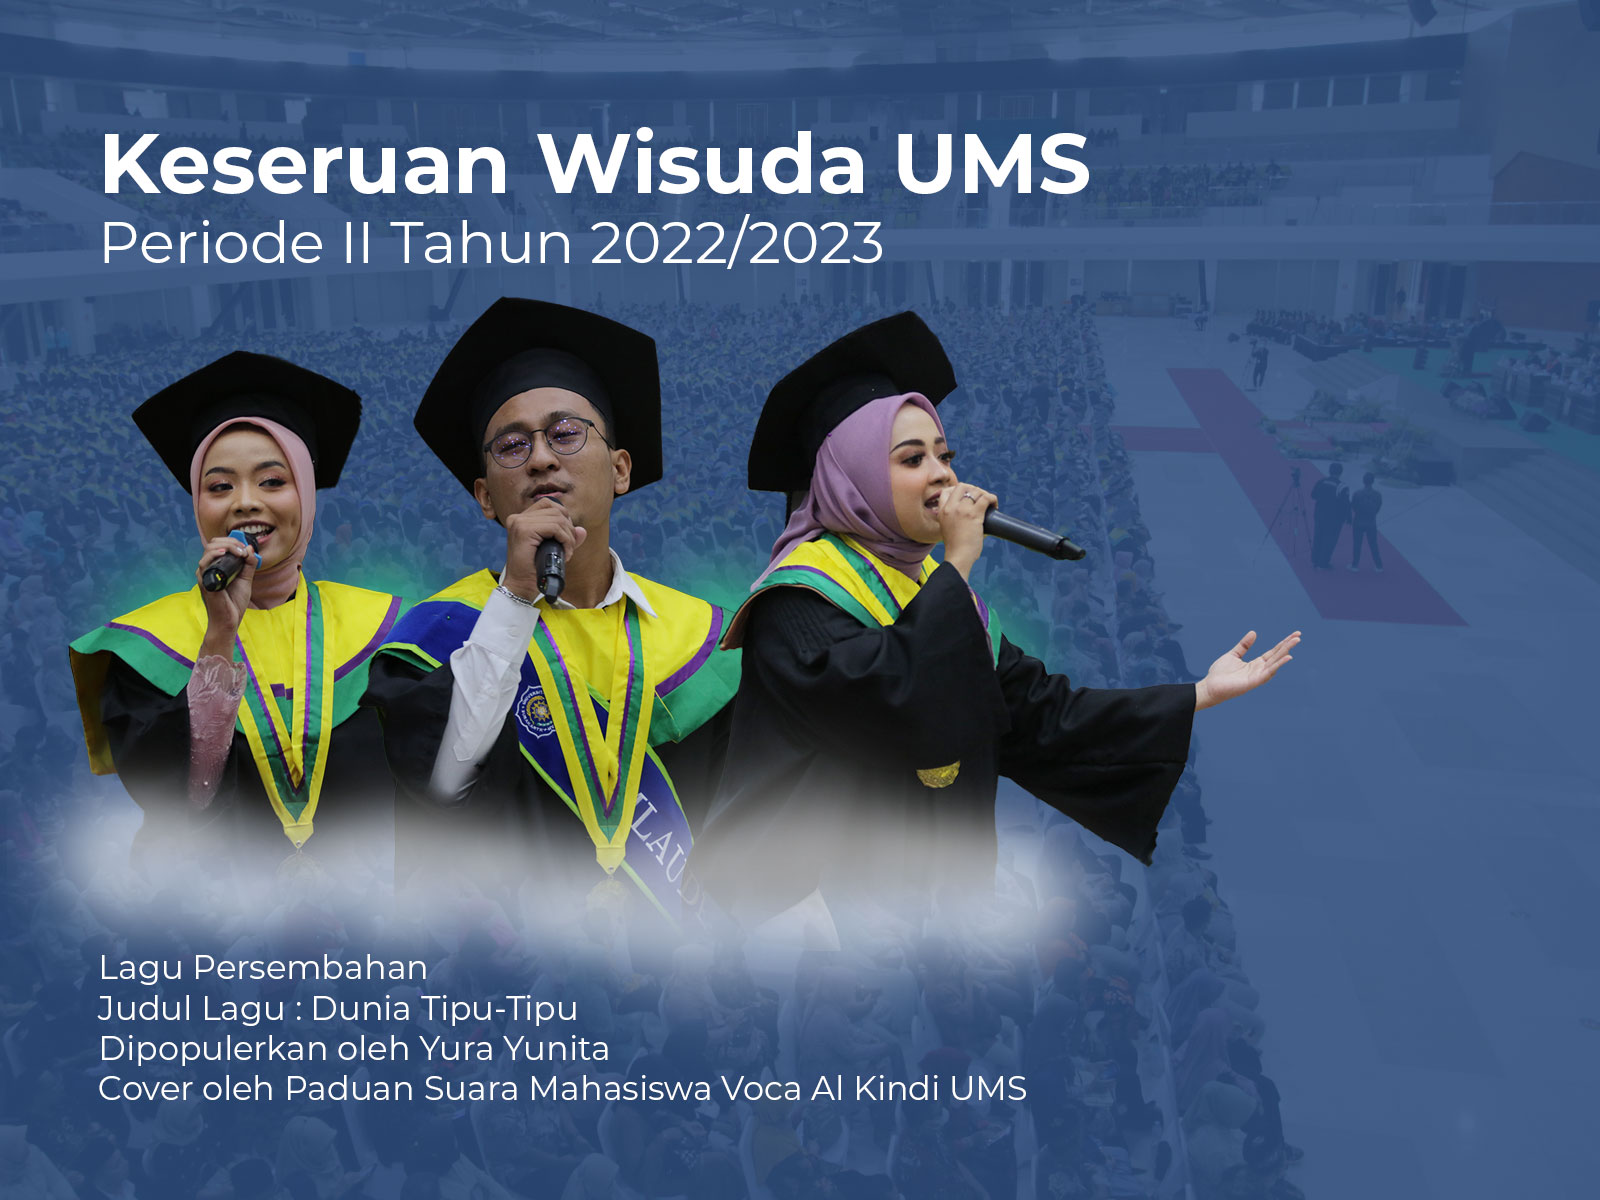 You are currently viewing Lagu Persembahan Paduan Suara Mahasiswa Voca Al Kindi UMS Saat Wisuda Periode II Tahun 2022/2023